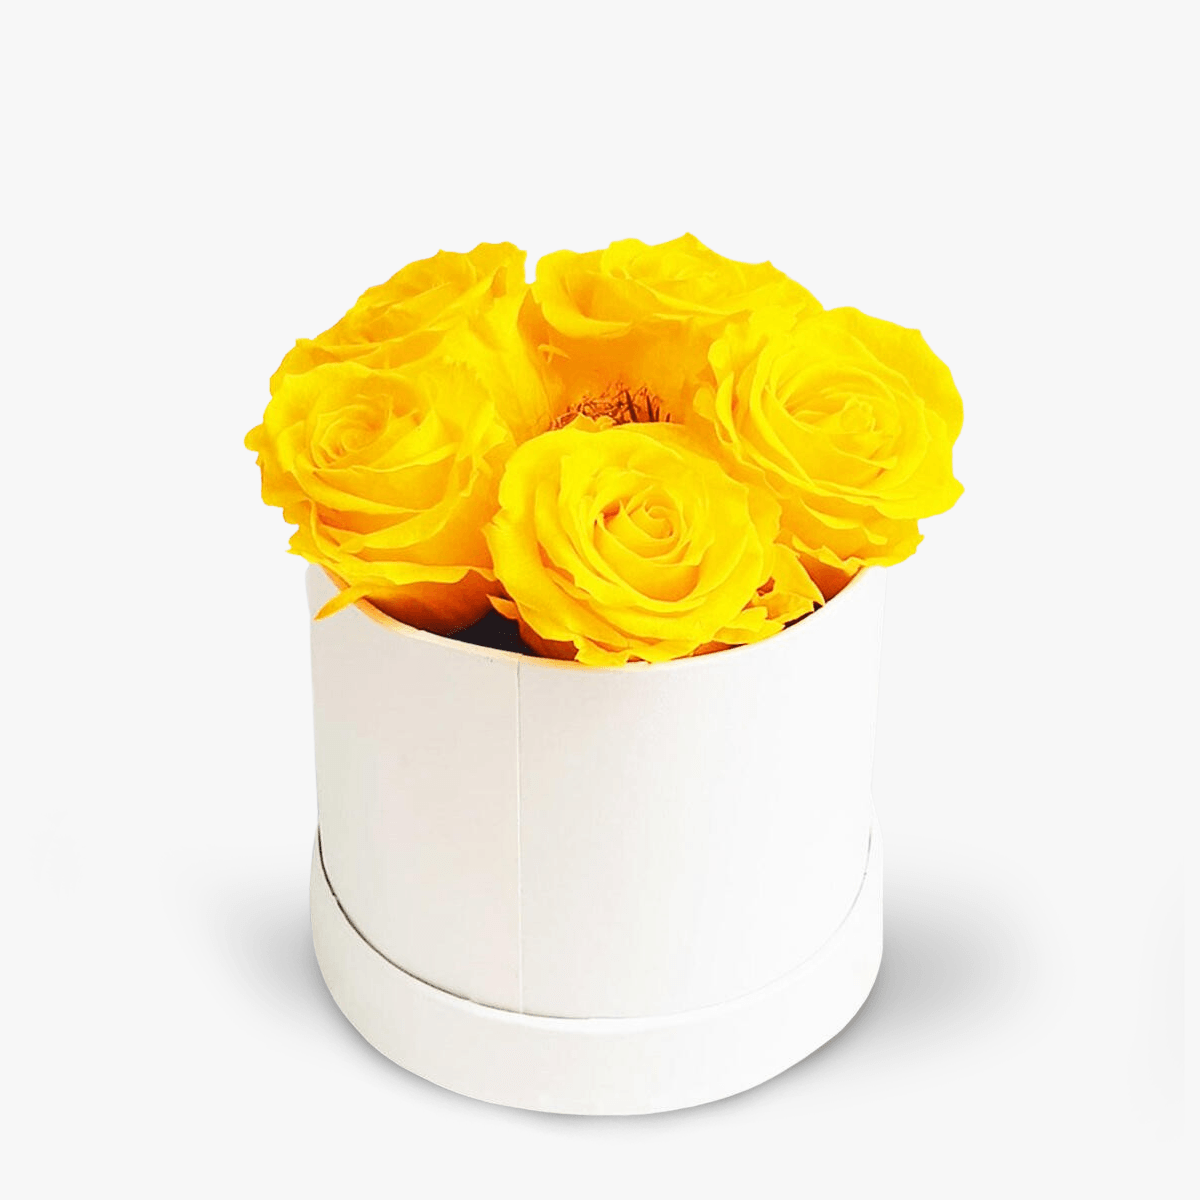 Cutie cu 5 trandafiri galbeni criogenati – Standard criogenati